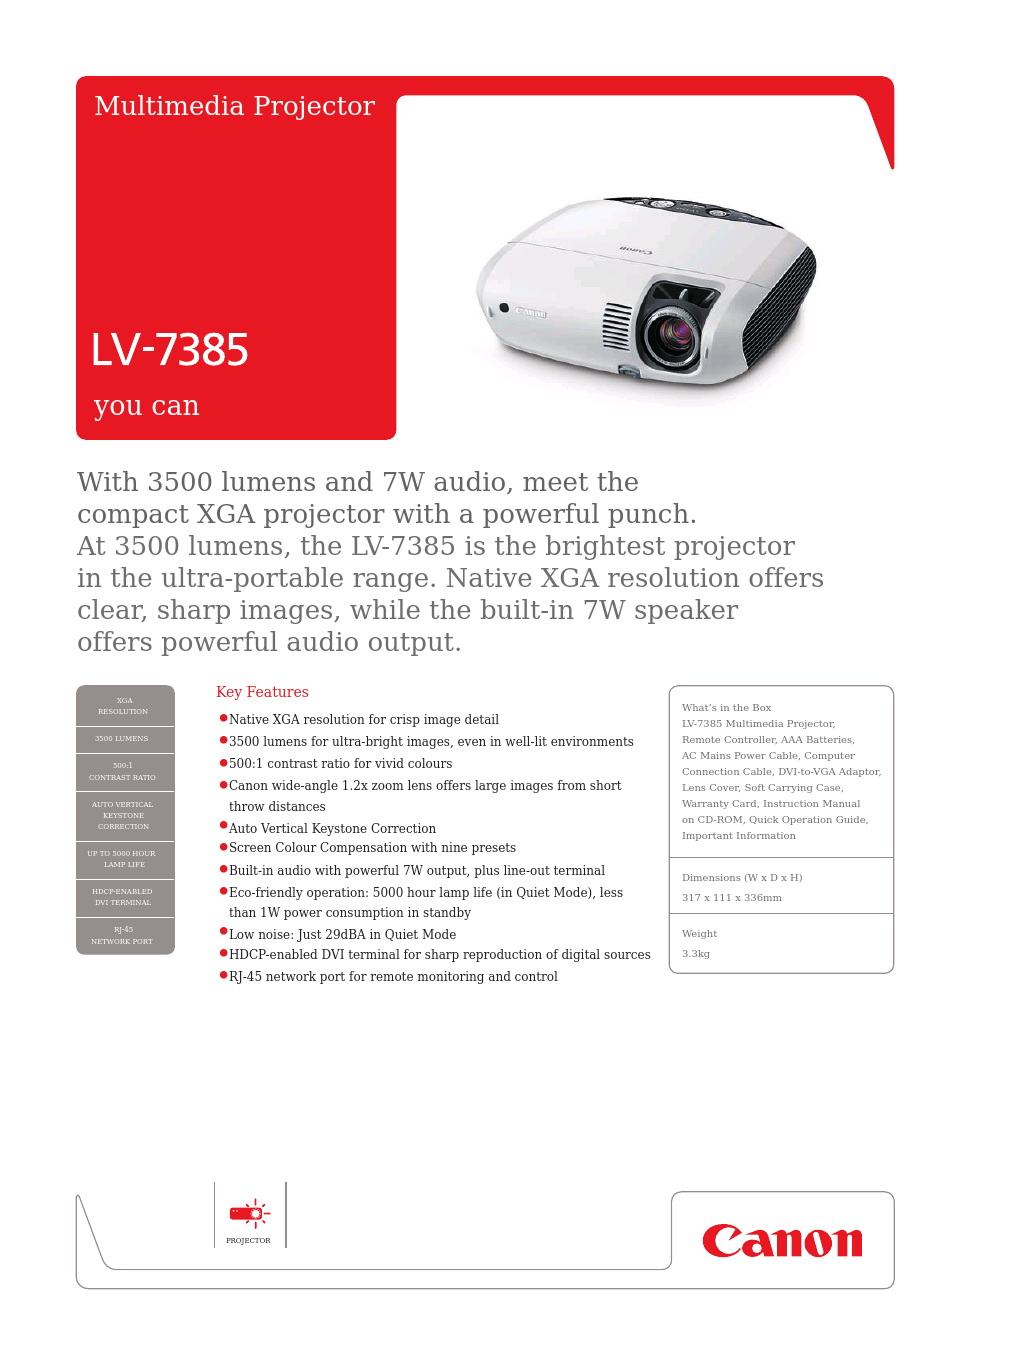 compact XGA projector LV-7385